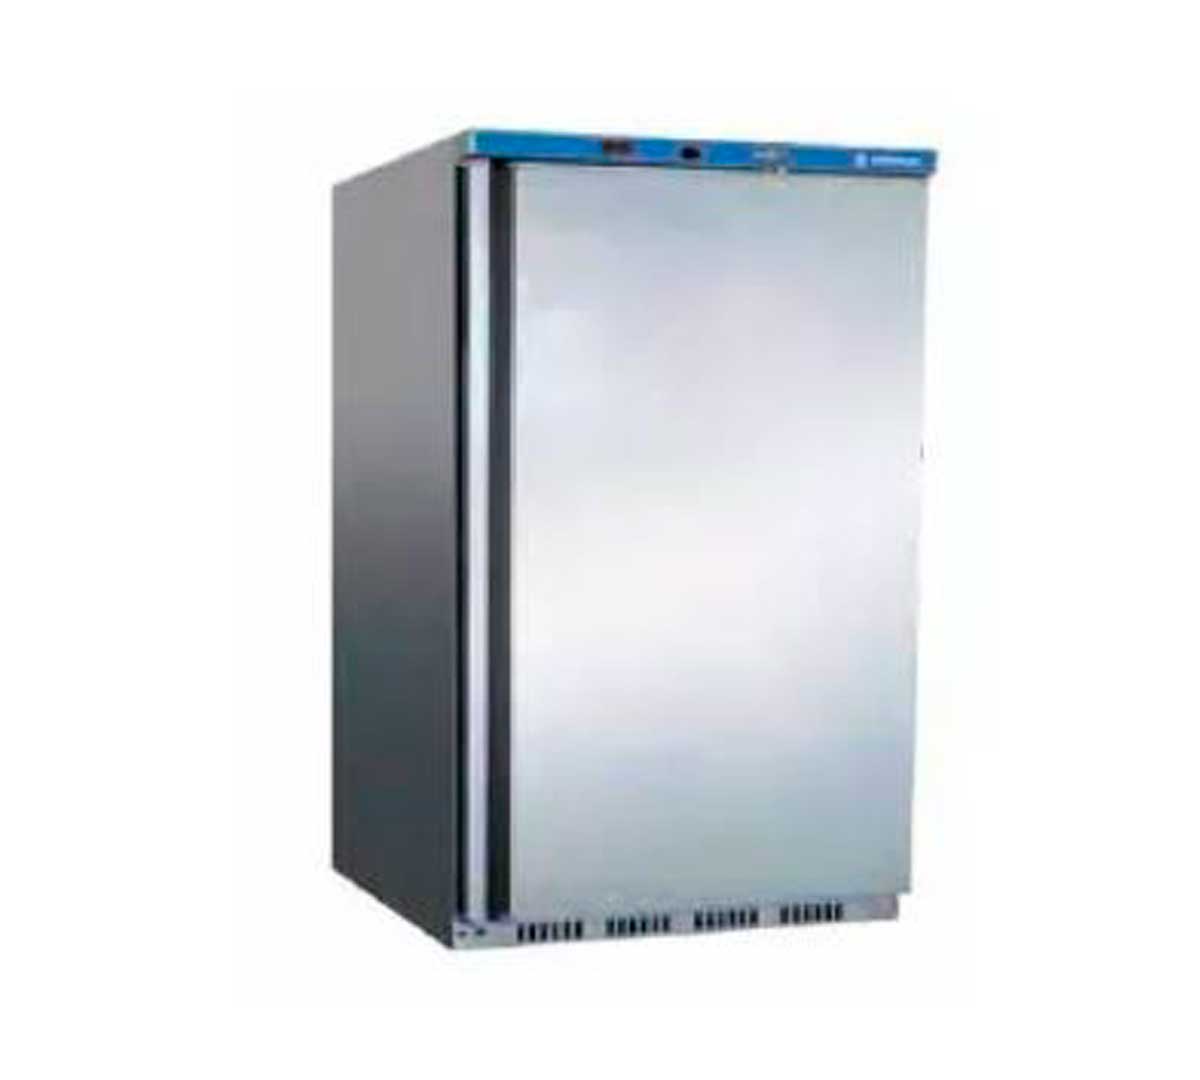 Armario congelador vertical pequeño Edenox ANS-251 blanco 626x742x855 mm